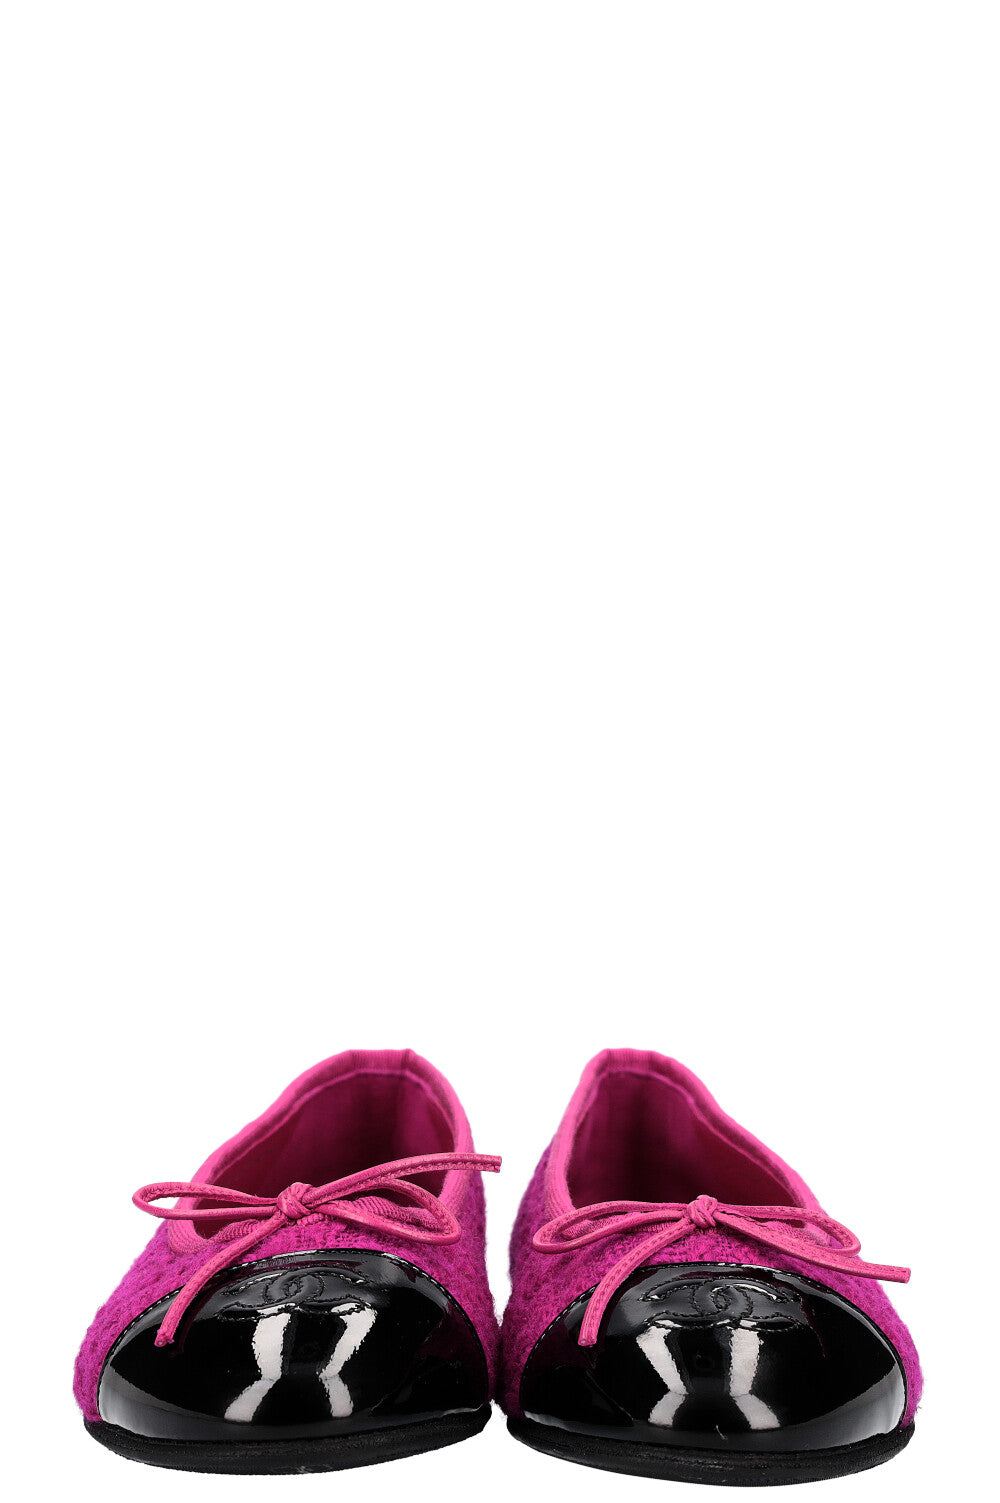 CHANEL Ballerina Flats Tweed Pink